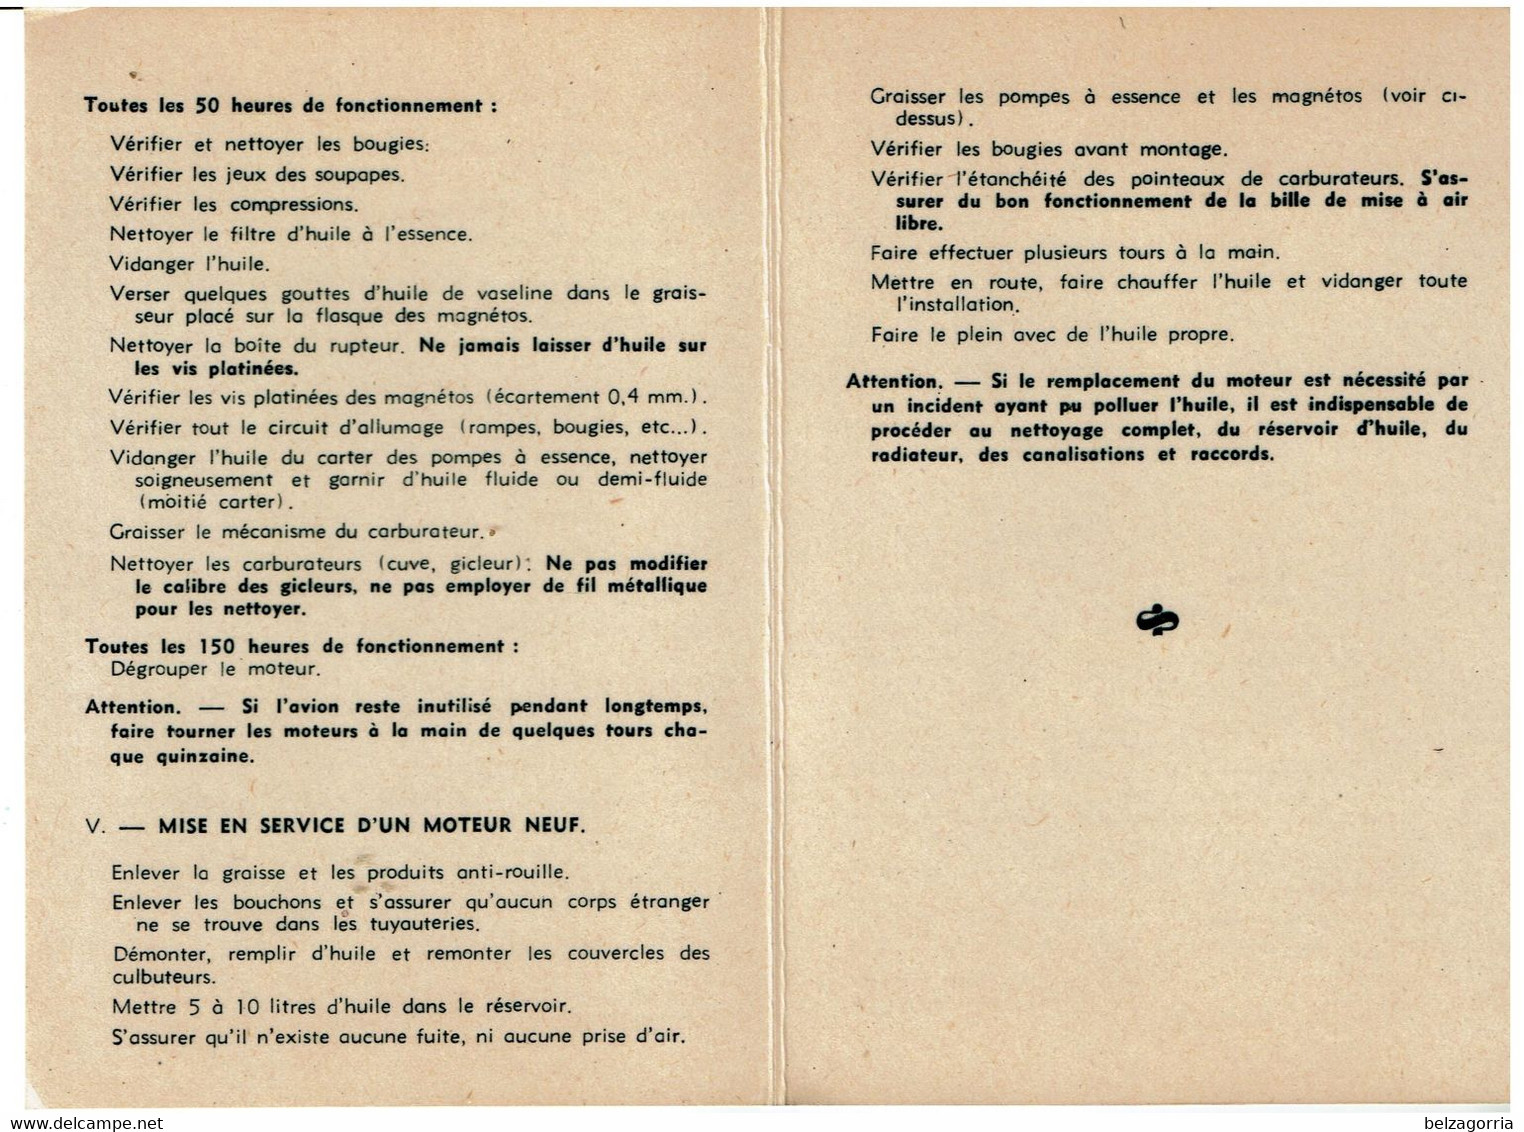 MANUEL MOTEURS AVIATION RENAULT 4 P.01 1927 CARTE DE SERVICE UTILISATION ENTRETIEN -TRES RARE - VOIR SCANS - Manuales